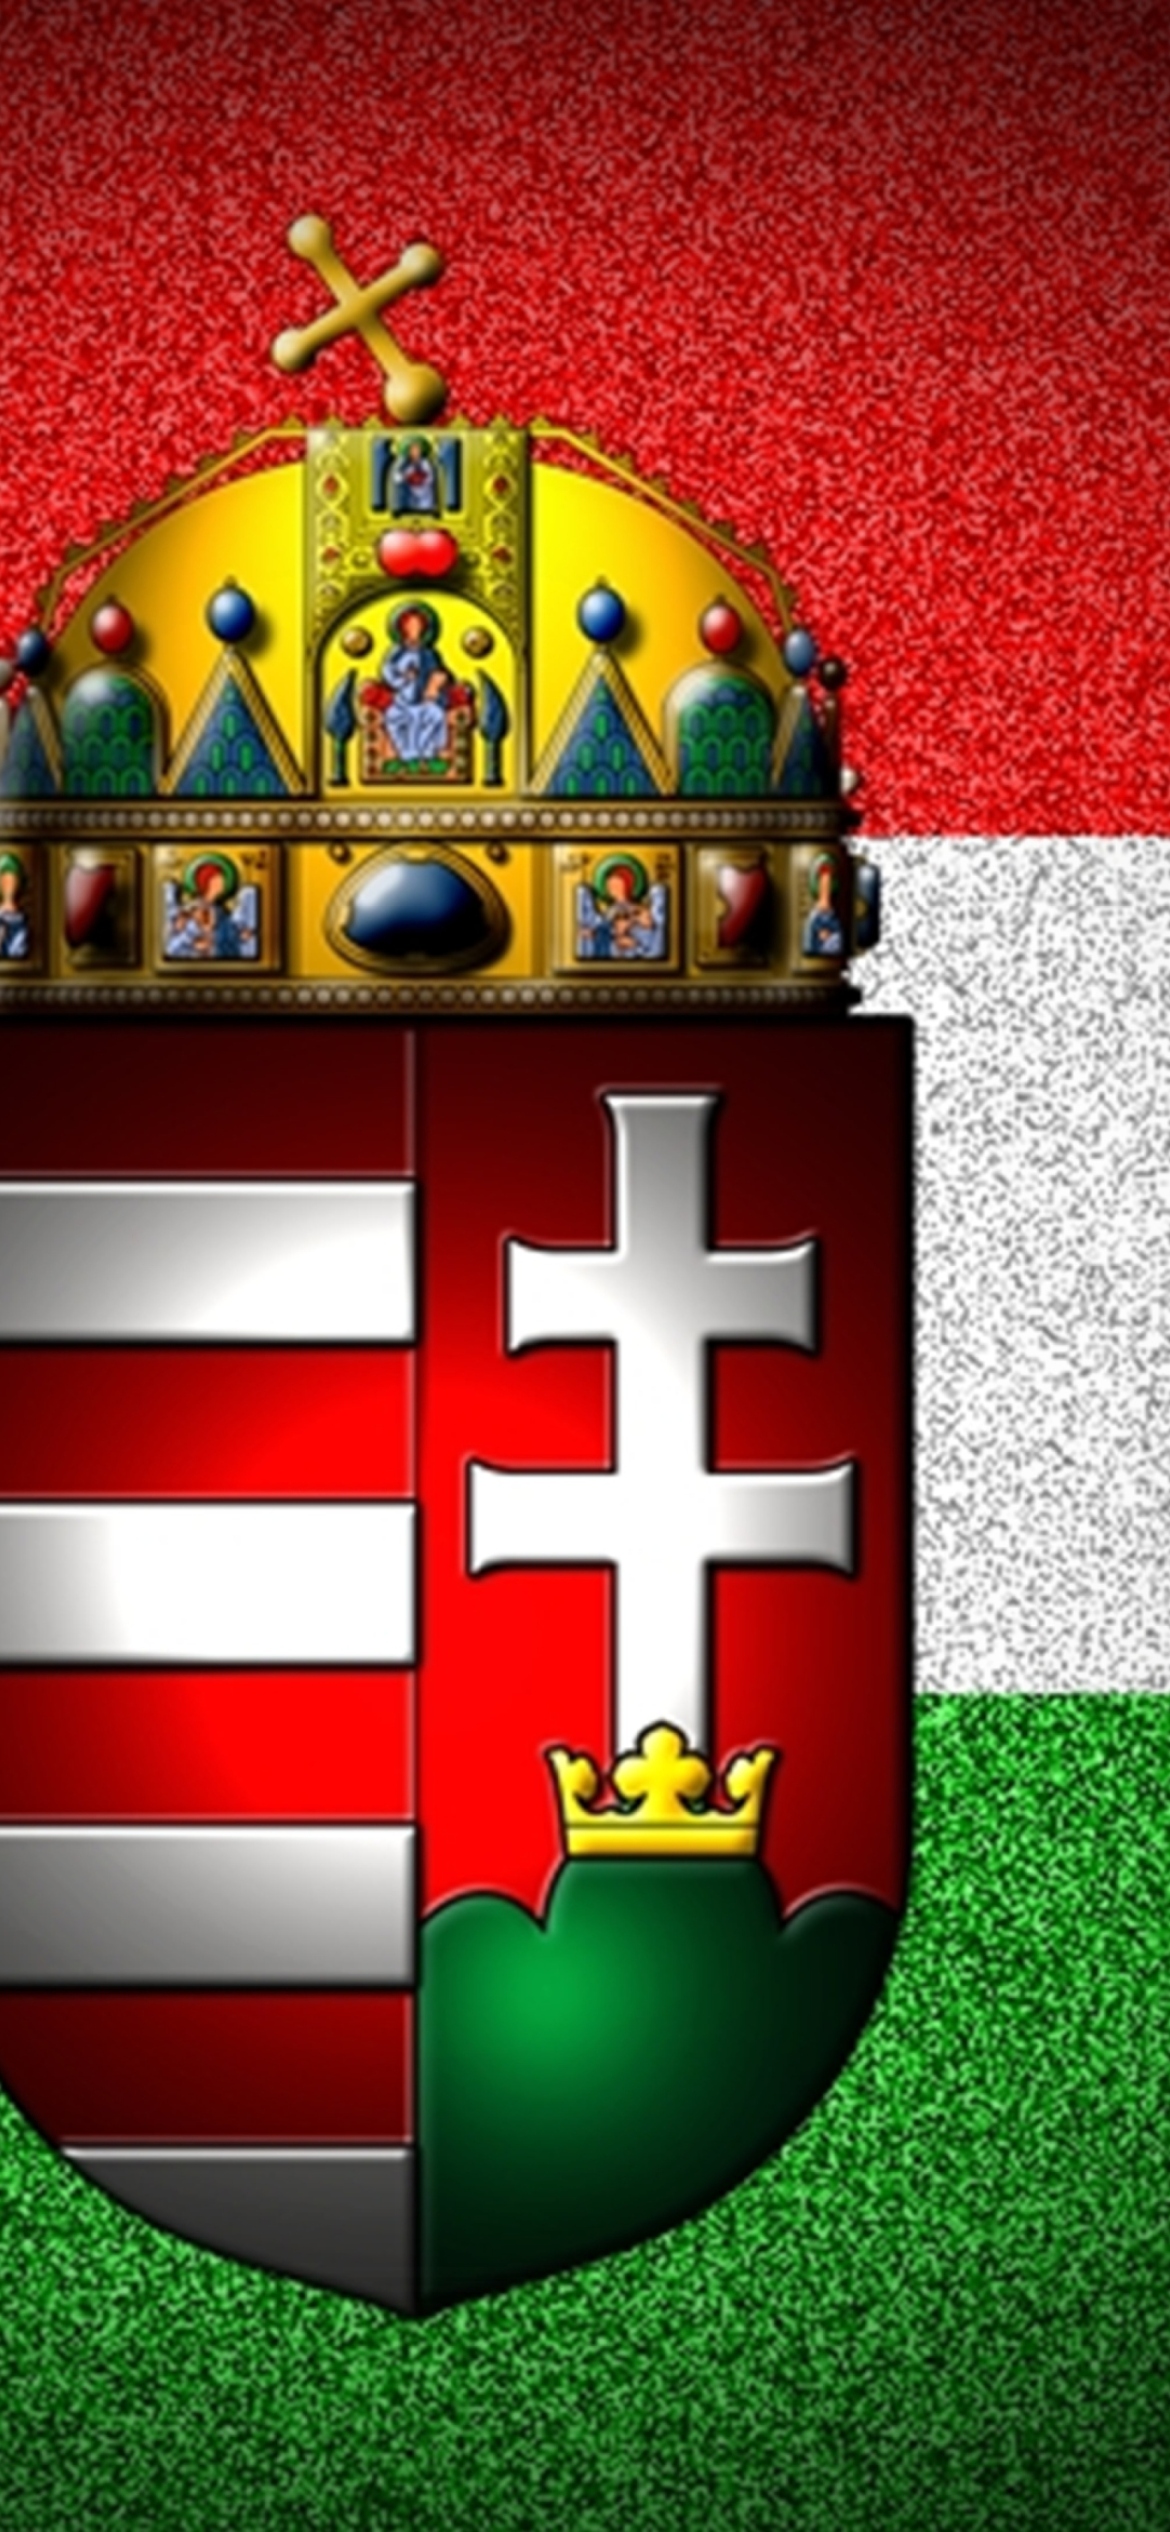 Das Hungary Flag - Magyarország zászlaja Wallpaper 1170x2532